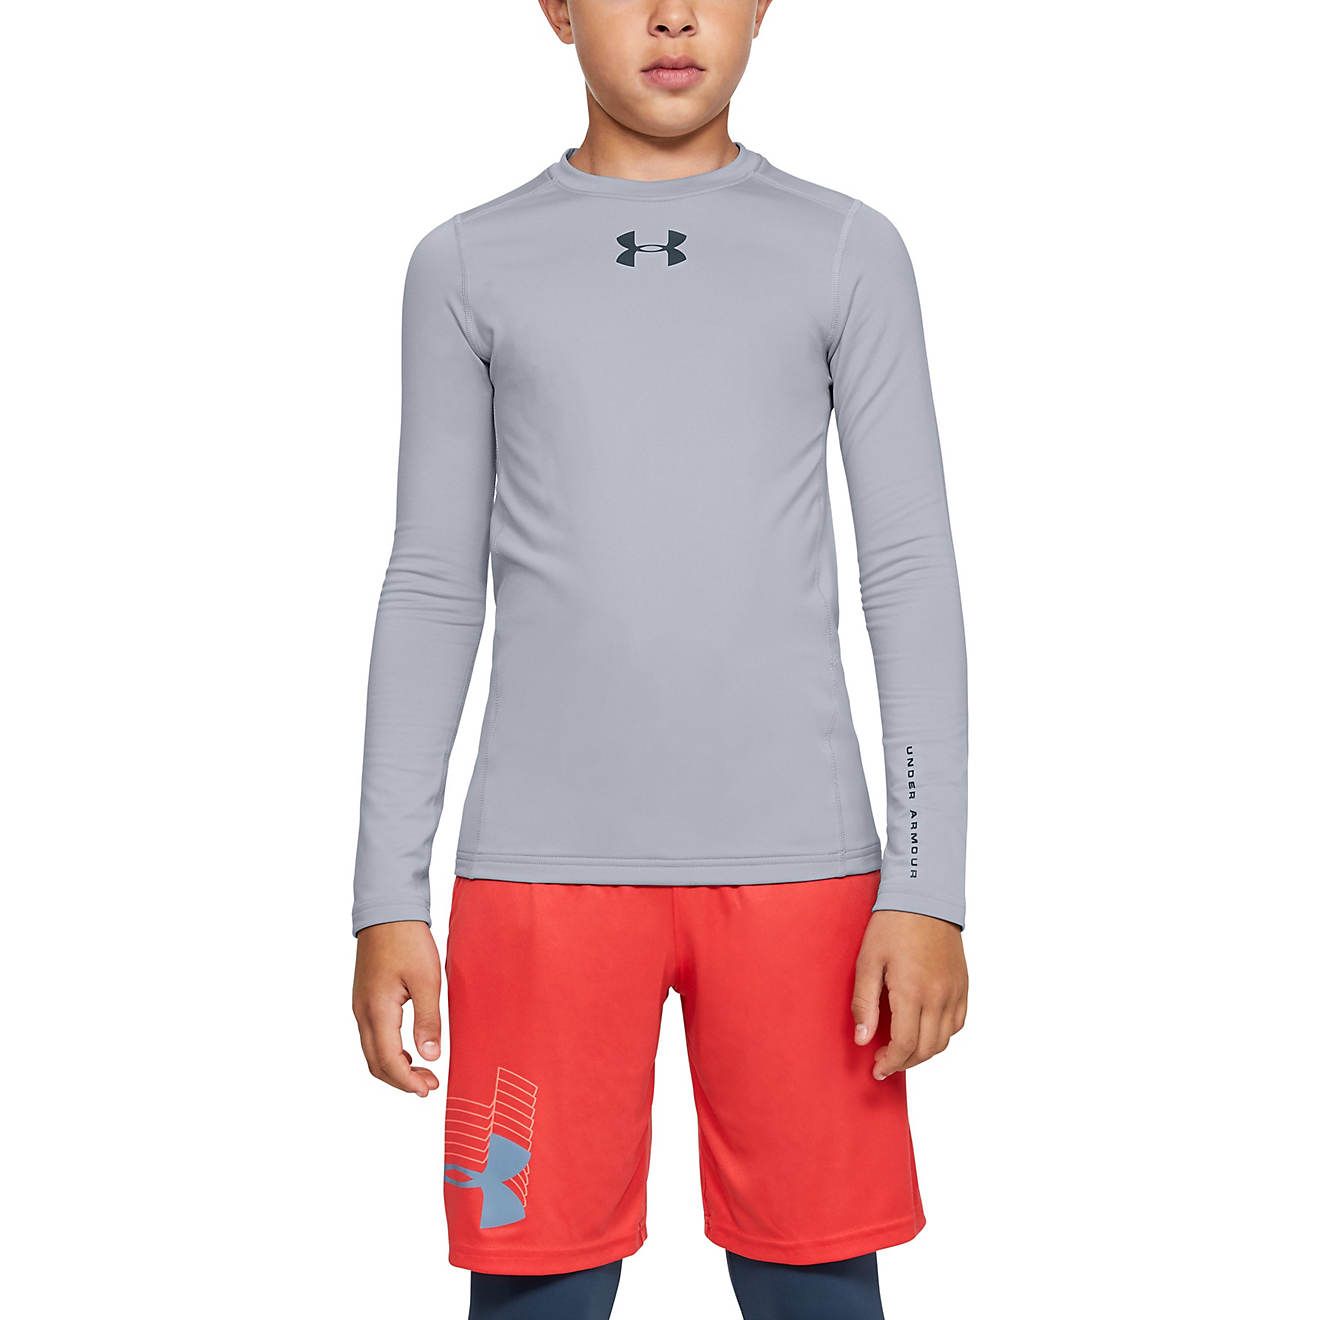 Under Armour Boys' ColdGear Armour Long Sleeve Shirt | Academy Sports + Outdoor Affiliate